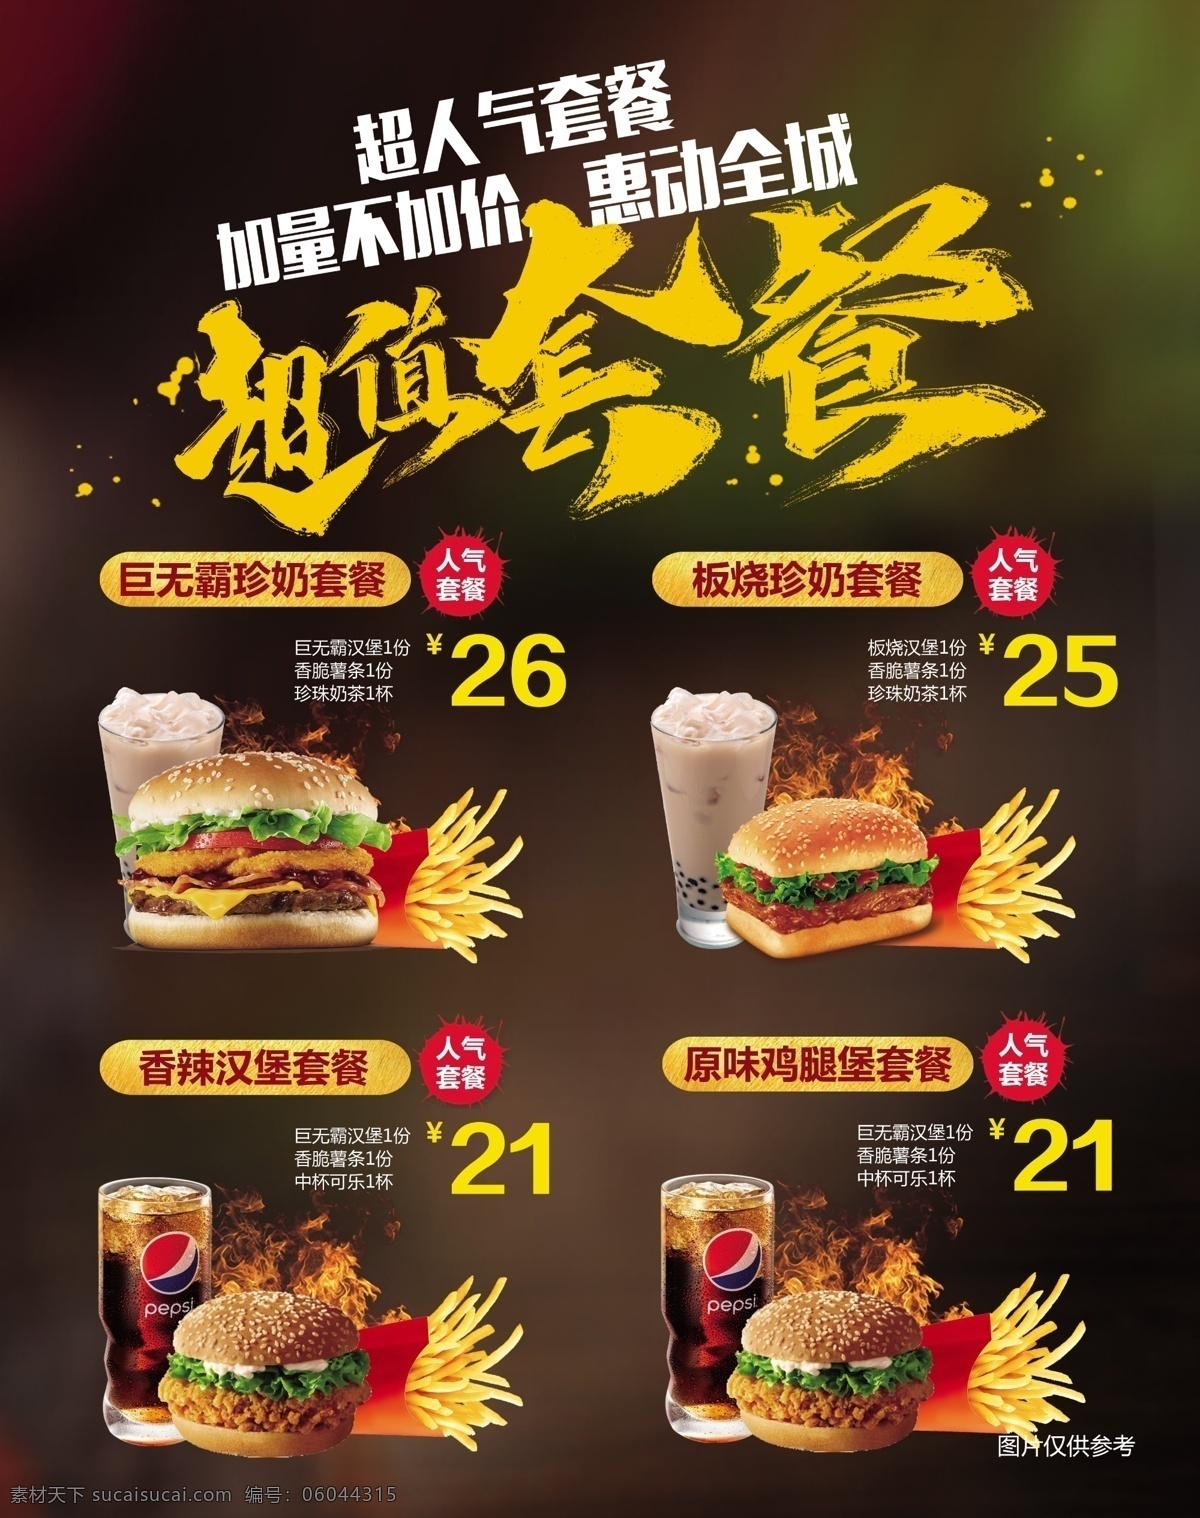 汉堡超值套餐 汉堡套餐 美食菜单 汉堡店海报 超值套餐 肯德基 麦当劳 汉堡灯箱 汉堡菜单